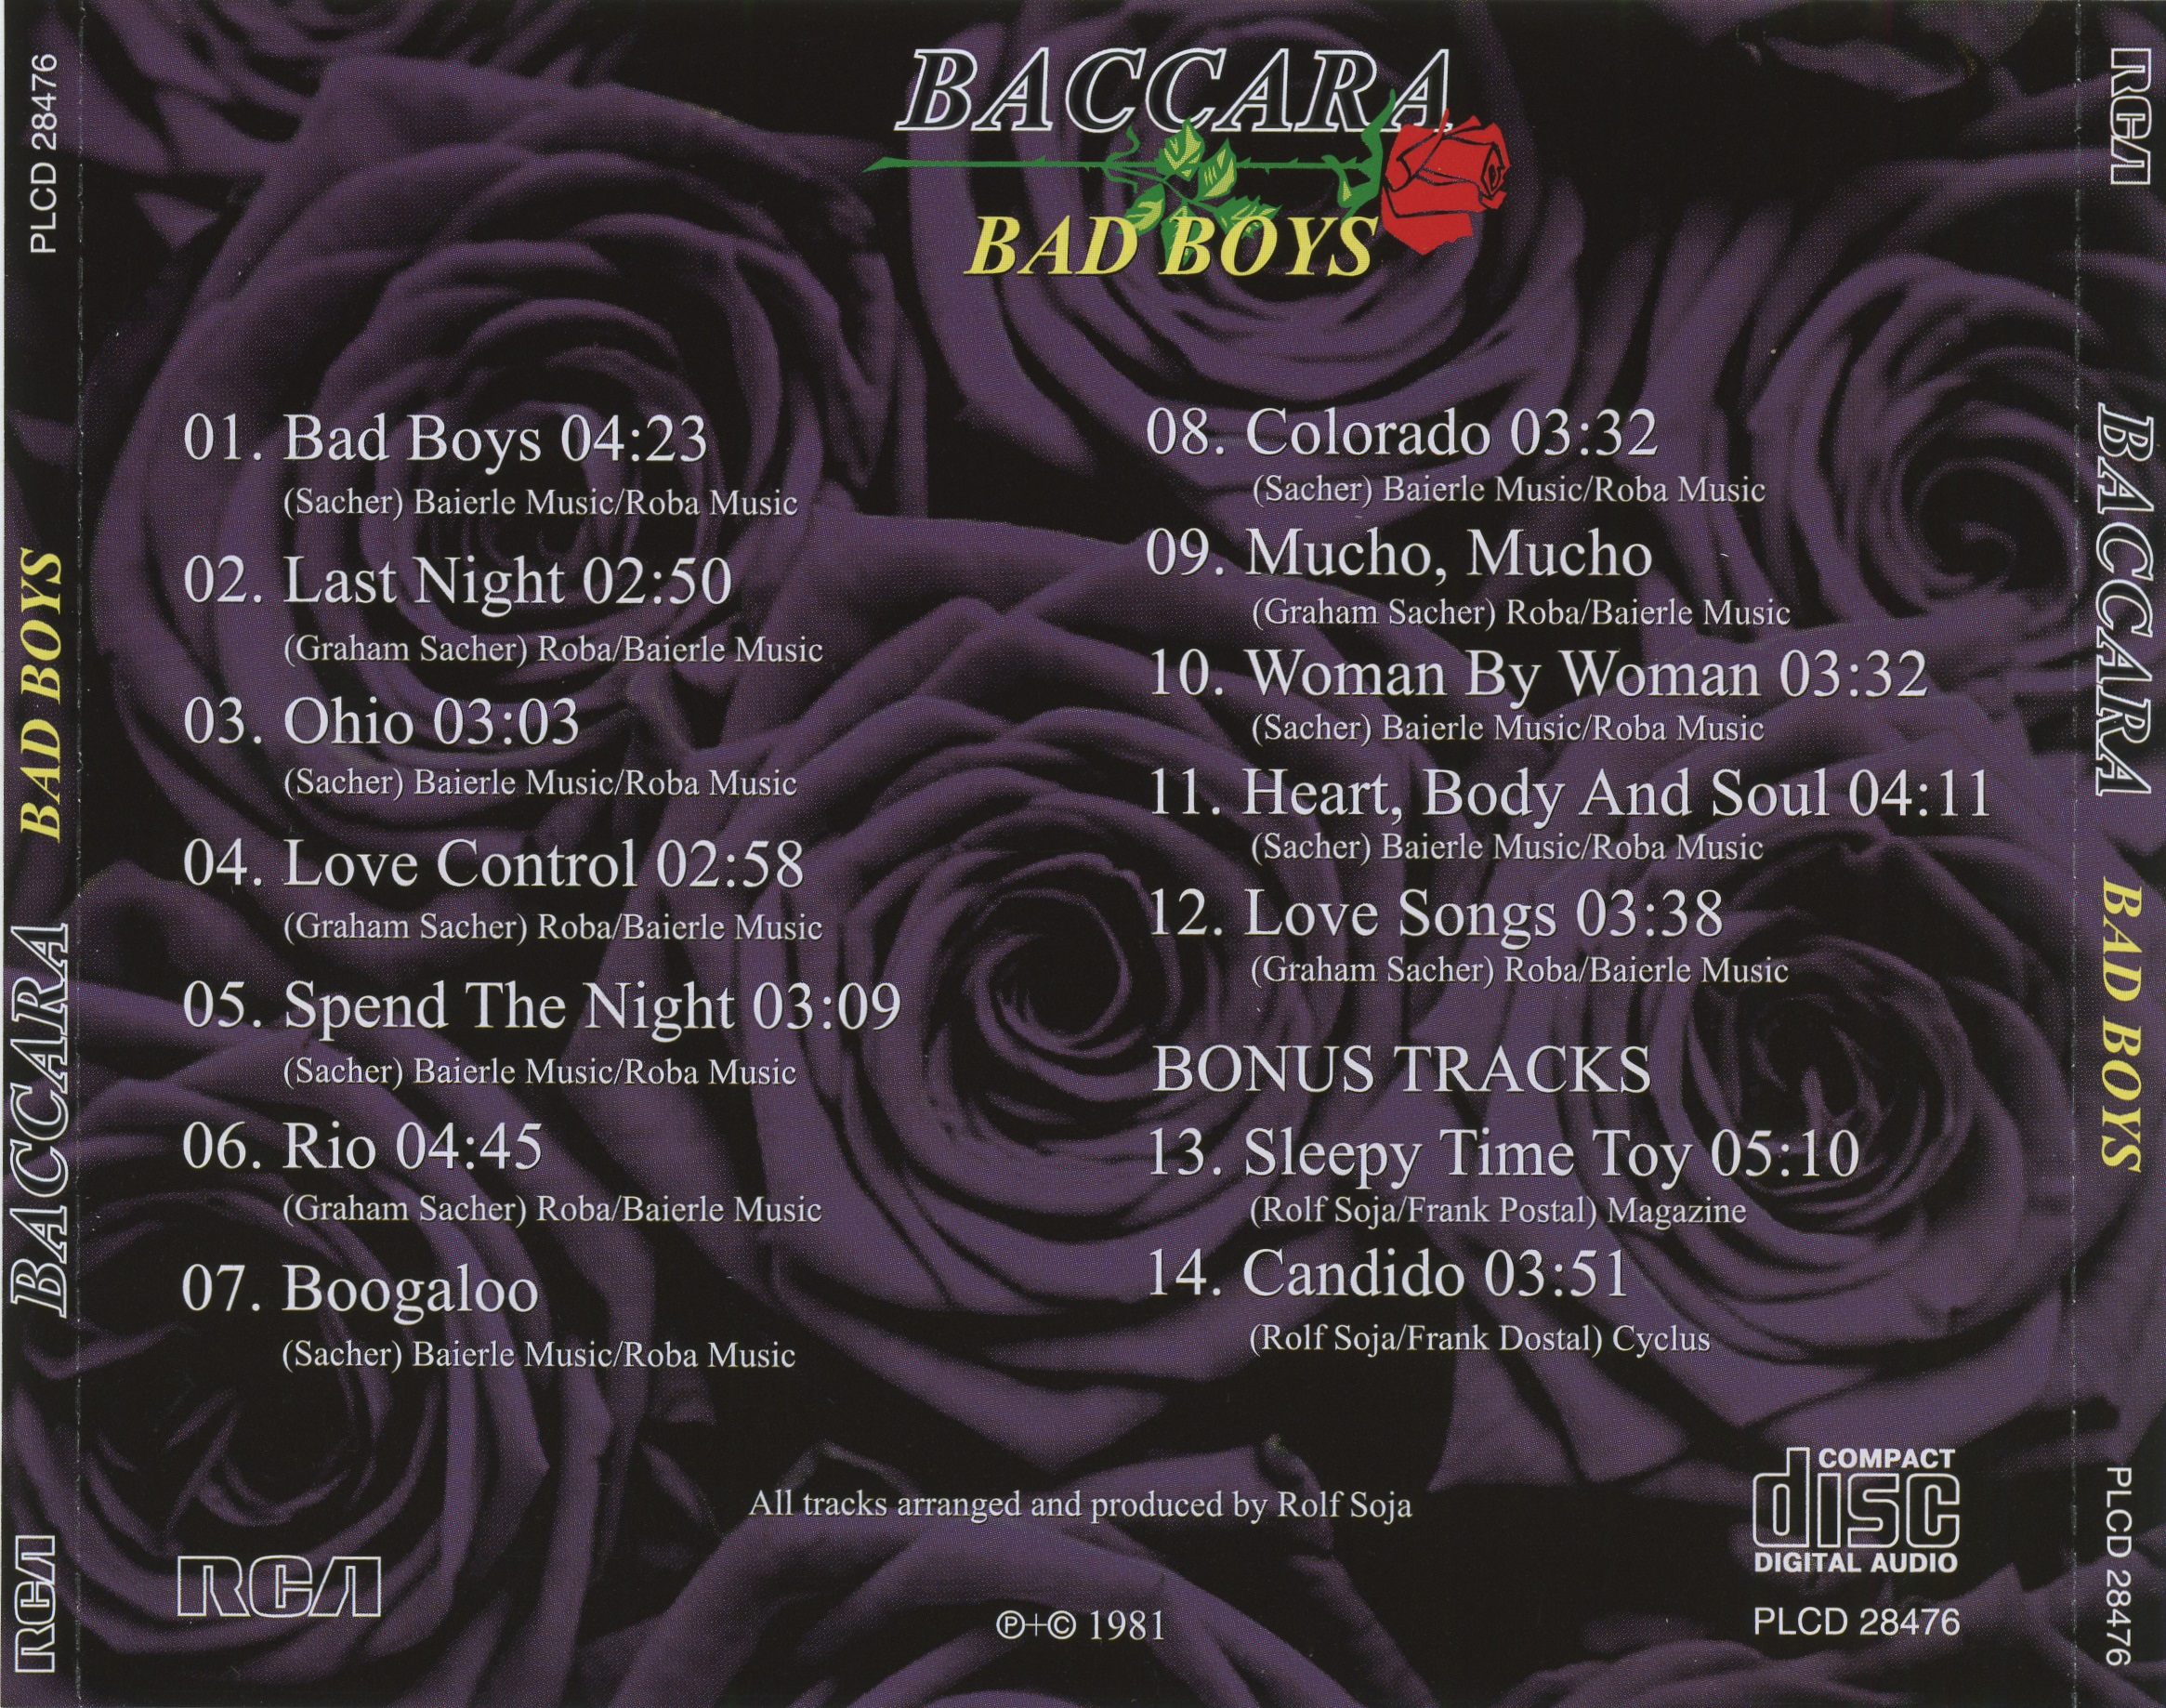 Баккара перевод. Baccara 1981. Baccara Bad boys 1981. Baccara Baccara 1977 обложка CD. Обложка альбома Baccara Bad boys (1981).